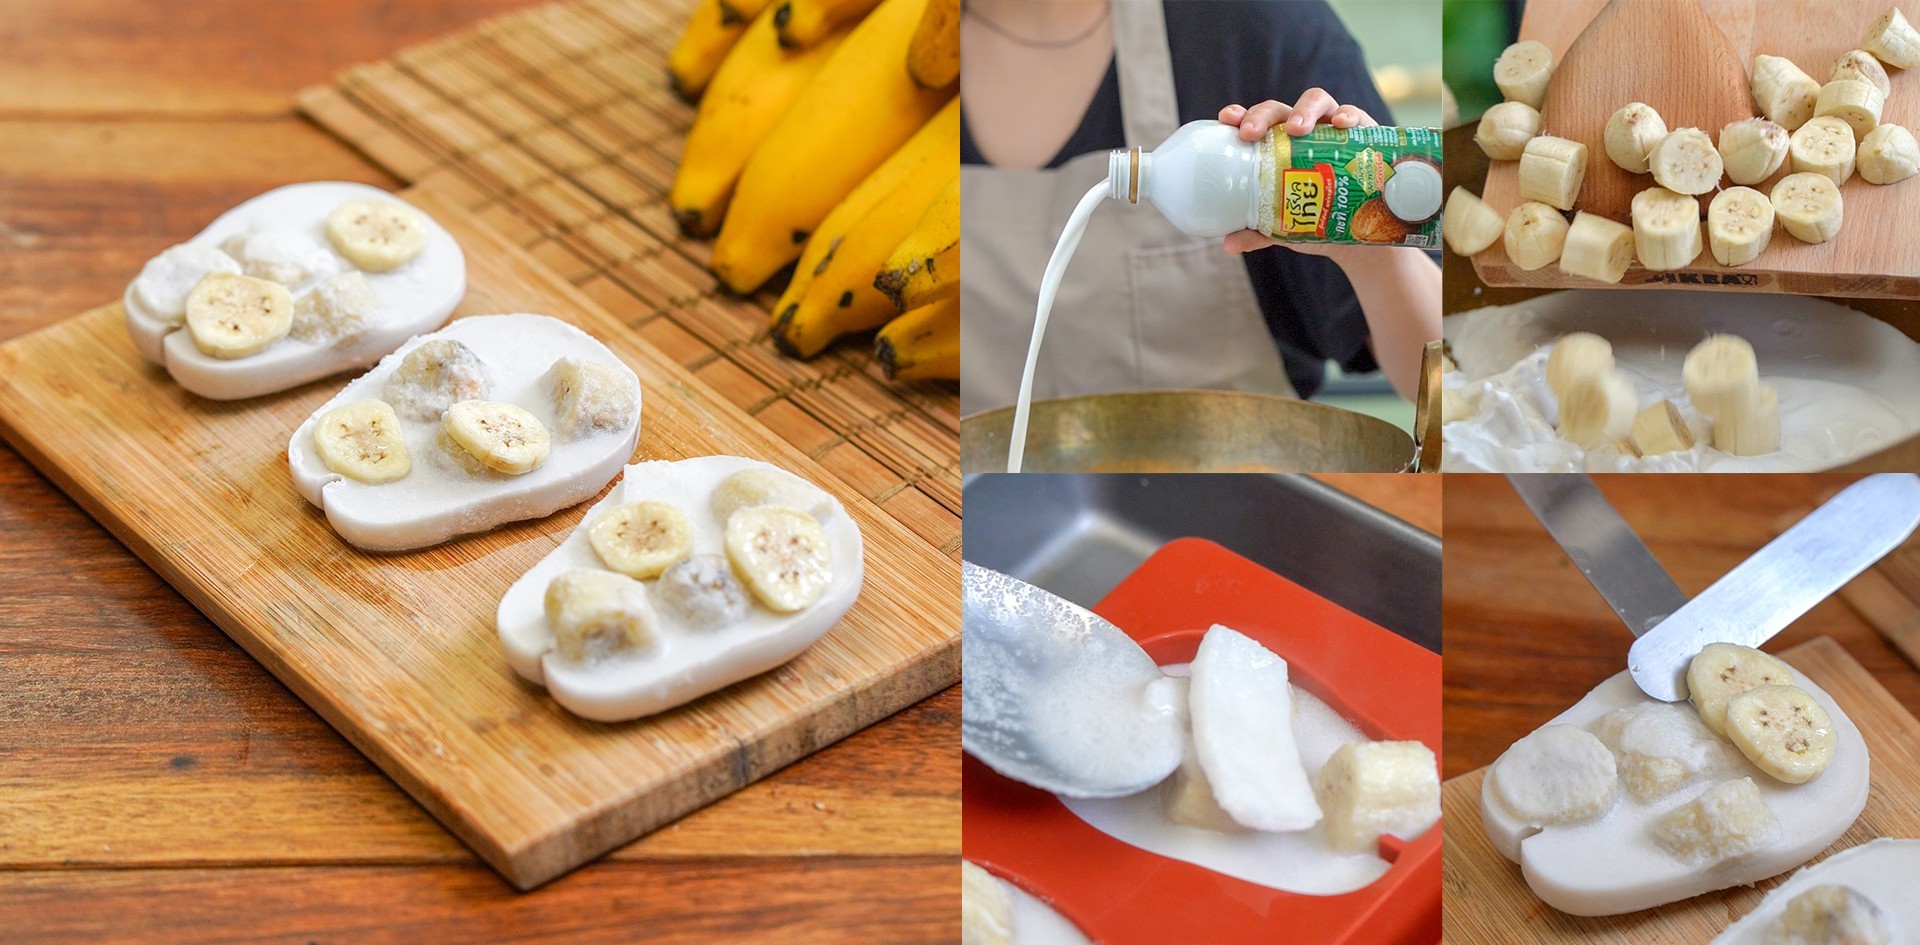 วิธีทำ “ไอศกรีมกล้วยบวชชี” เติมความสดชื่นรับซัมเมอร์กันแบบไทย ๆ เมนูอาหารว่าง